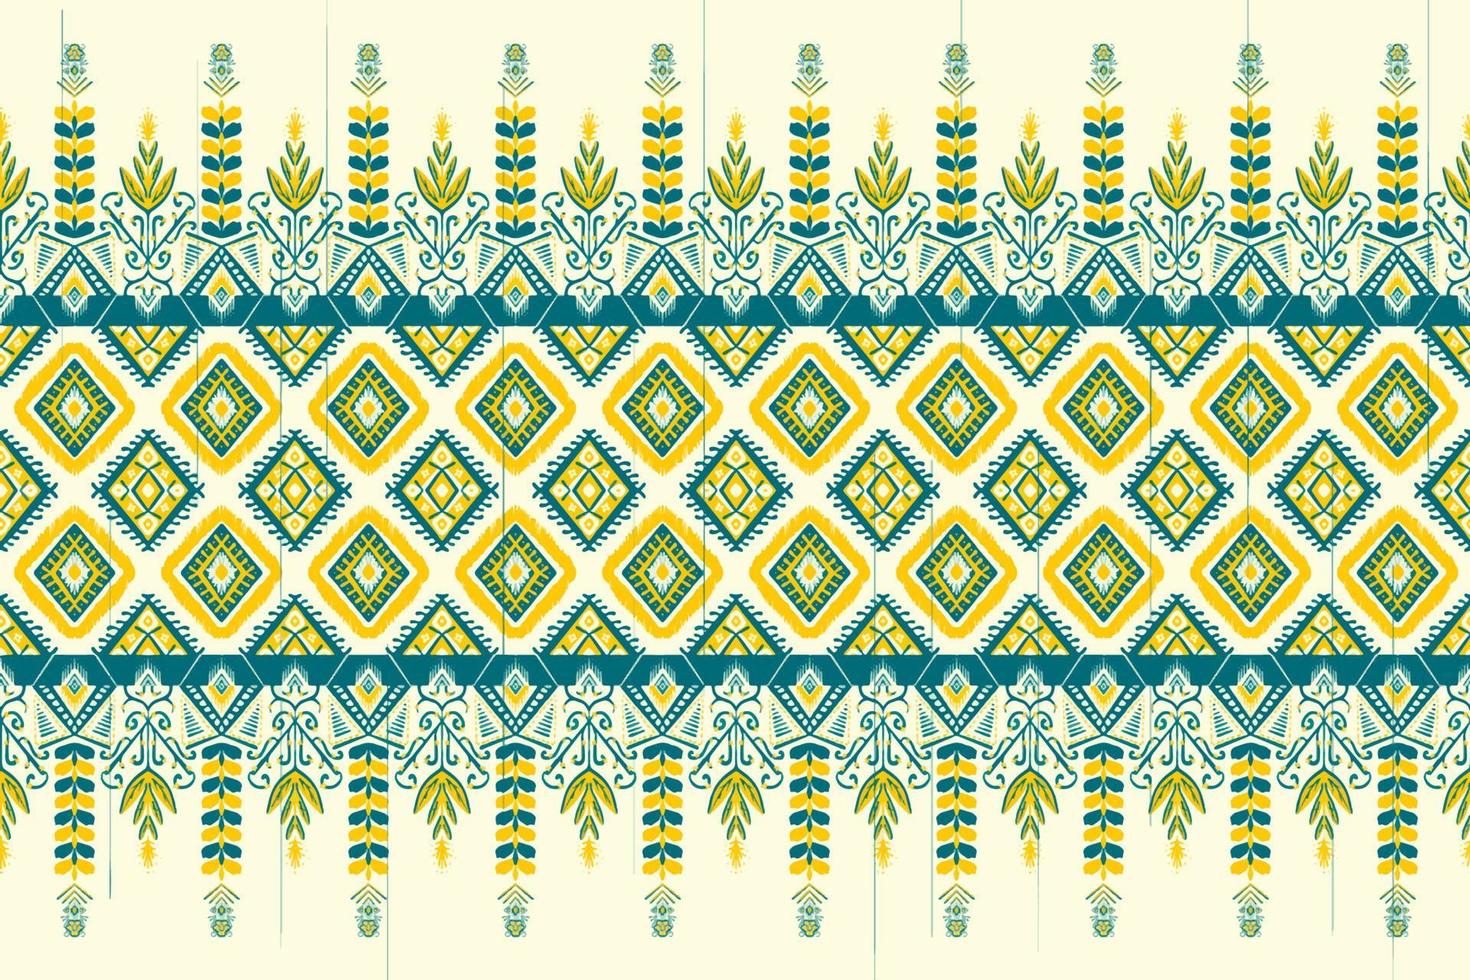 gele en indigo blauwe bloem op ivoor. geometrische etnische oosterse patroon traditioneel ontwerp voor achtergrond, tapijt, behang, kleding, verpakking, batik, stof, vector illustratie borduurstijl